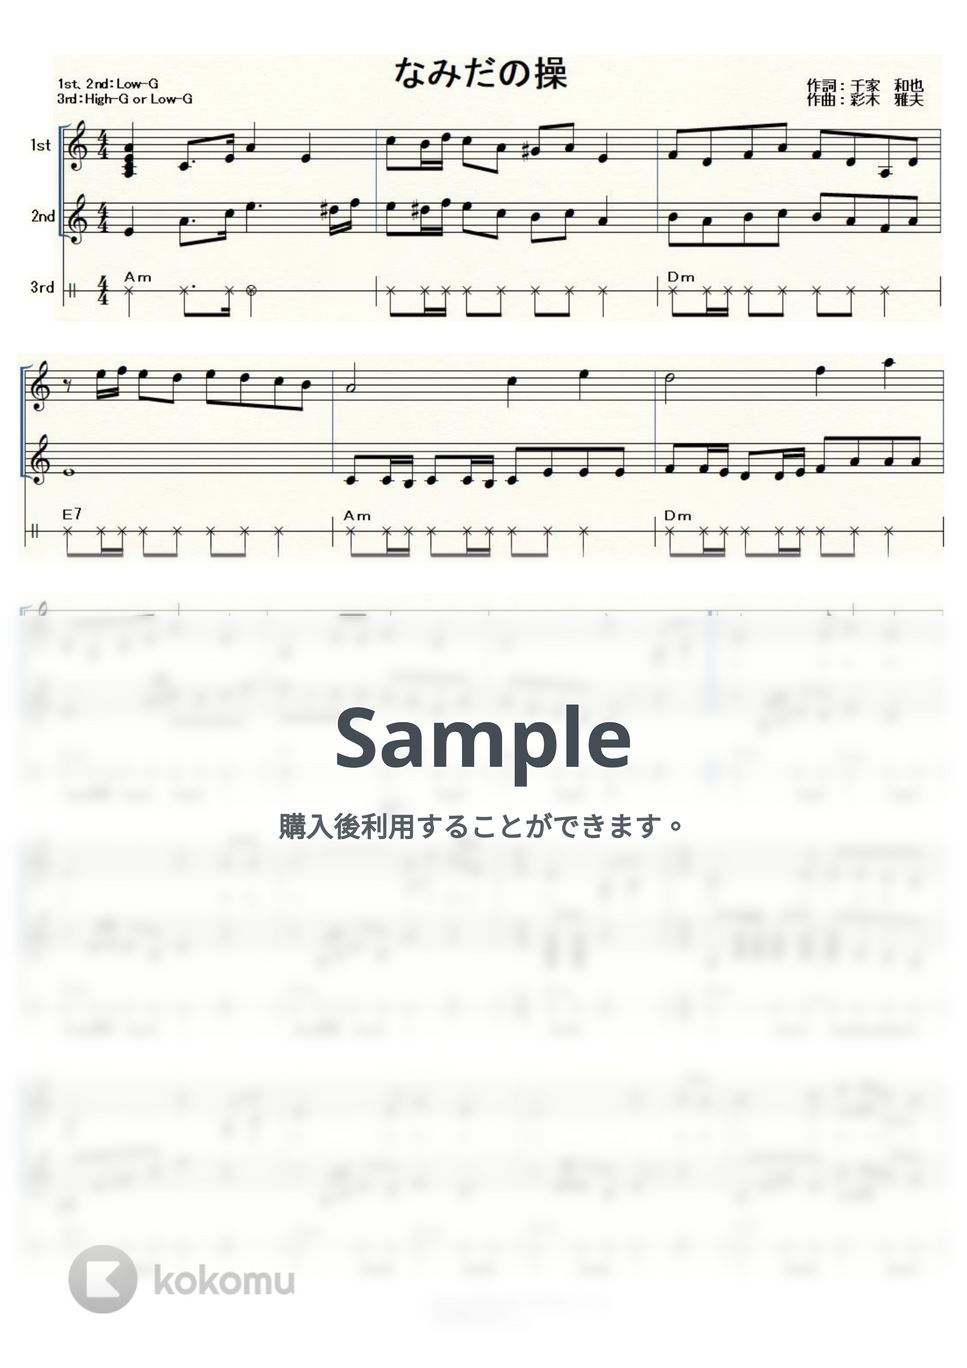 殿さまキングス - なみだの操 (ｳｸﾚﾚ三重奏/High-G・Low-G/中級) by ukulelepapa